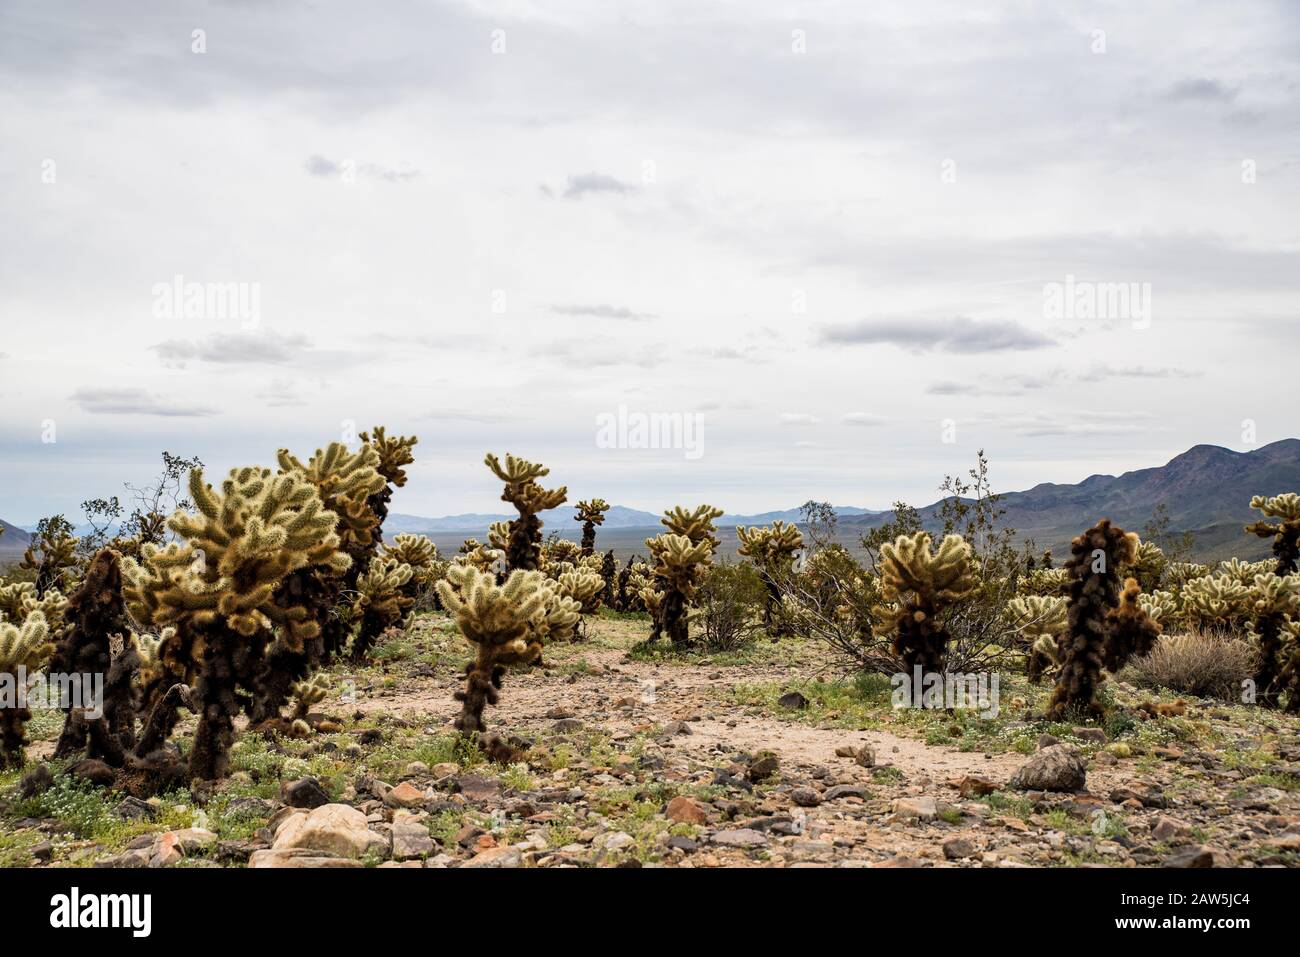 Sentier bordé de cactus de la corolle sous ciel gris dans le paysage désertique Banque D'Images